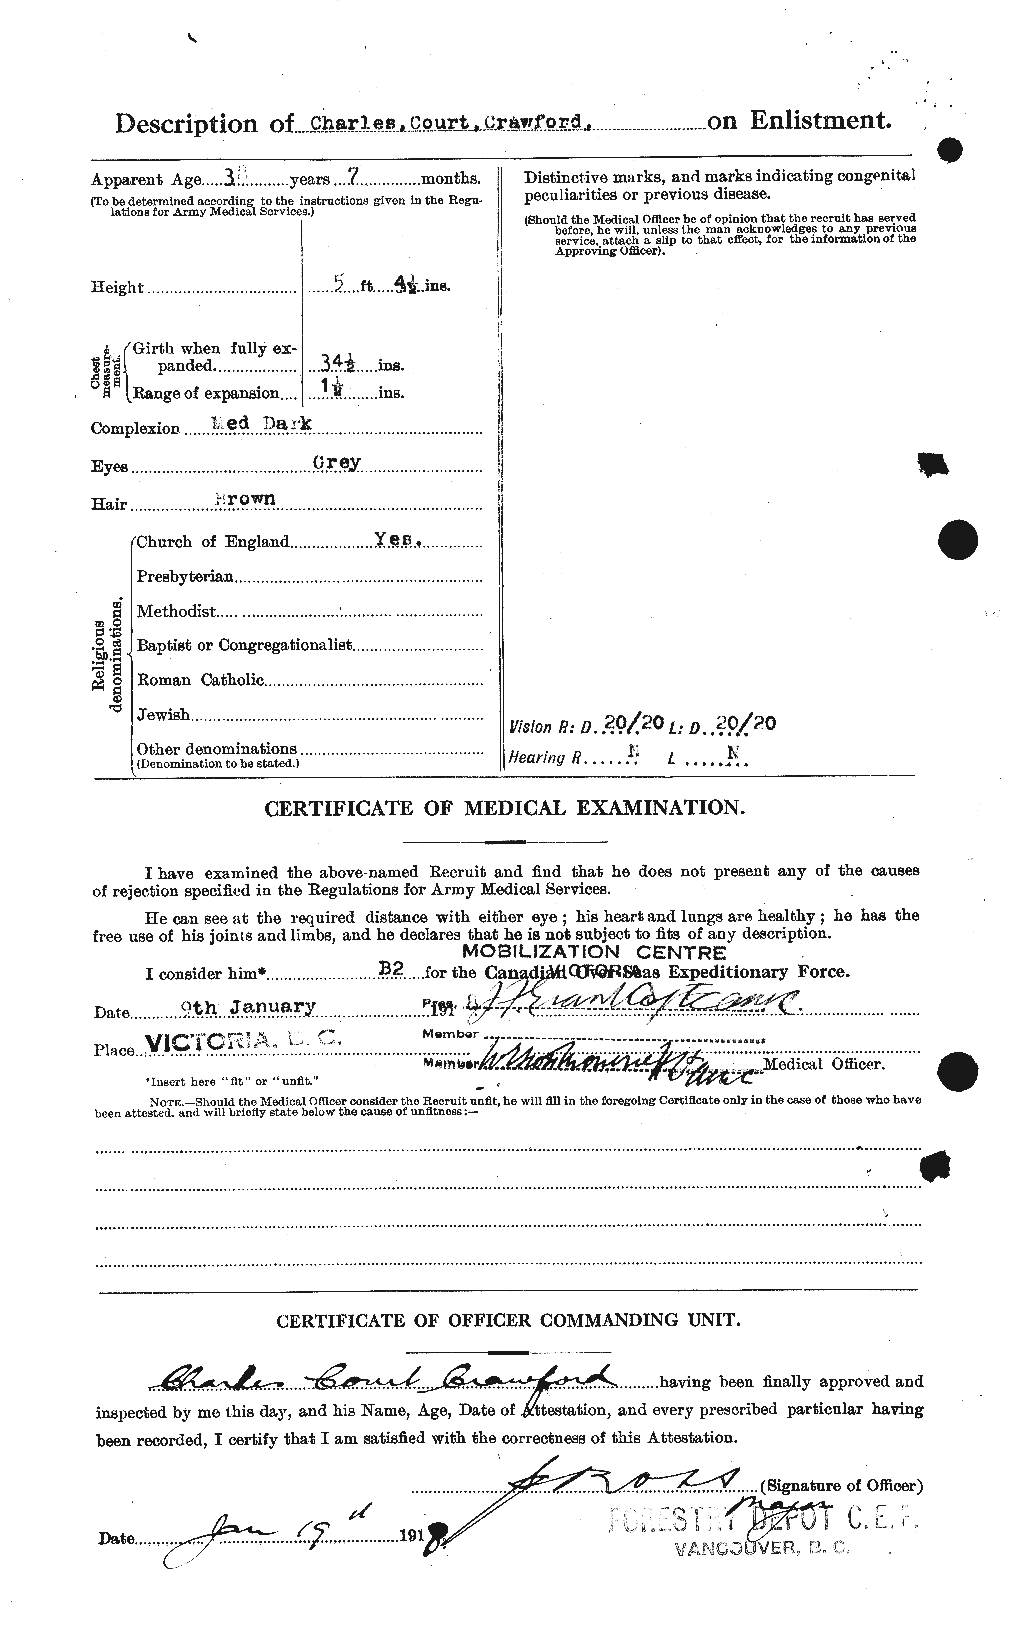 Dossiers du Personnel de la Première Guerre mondiale - CEC 060842b